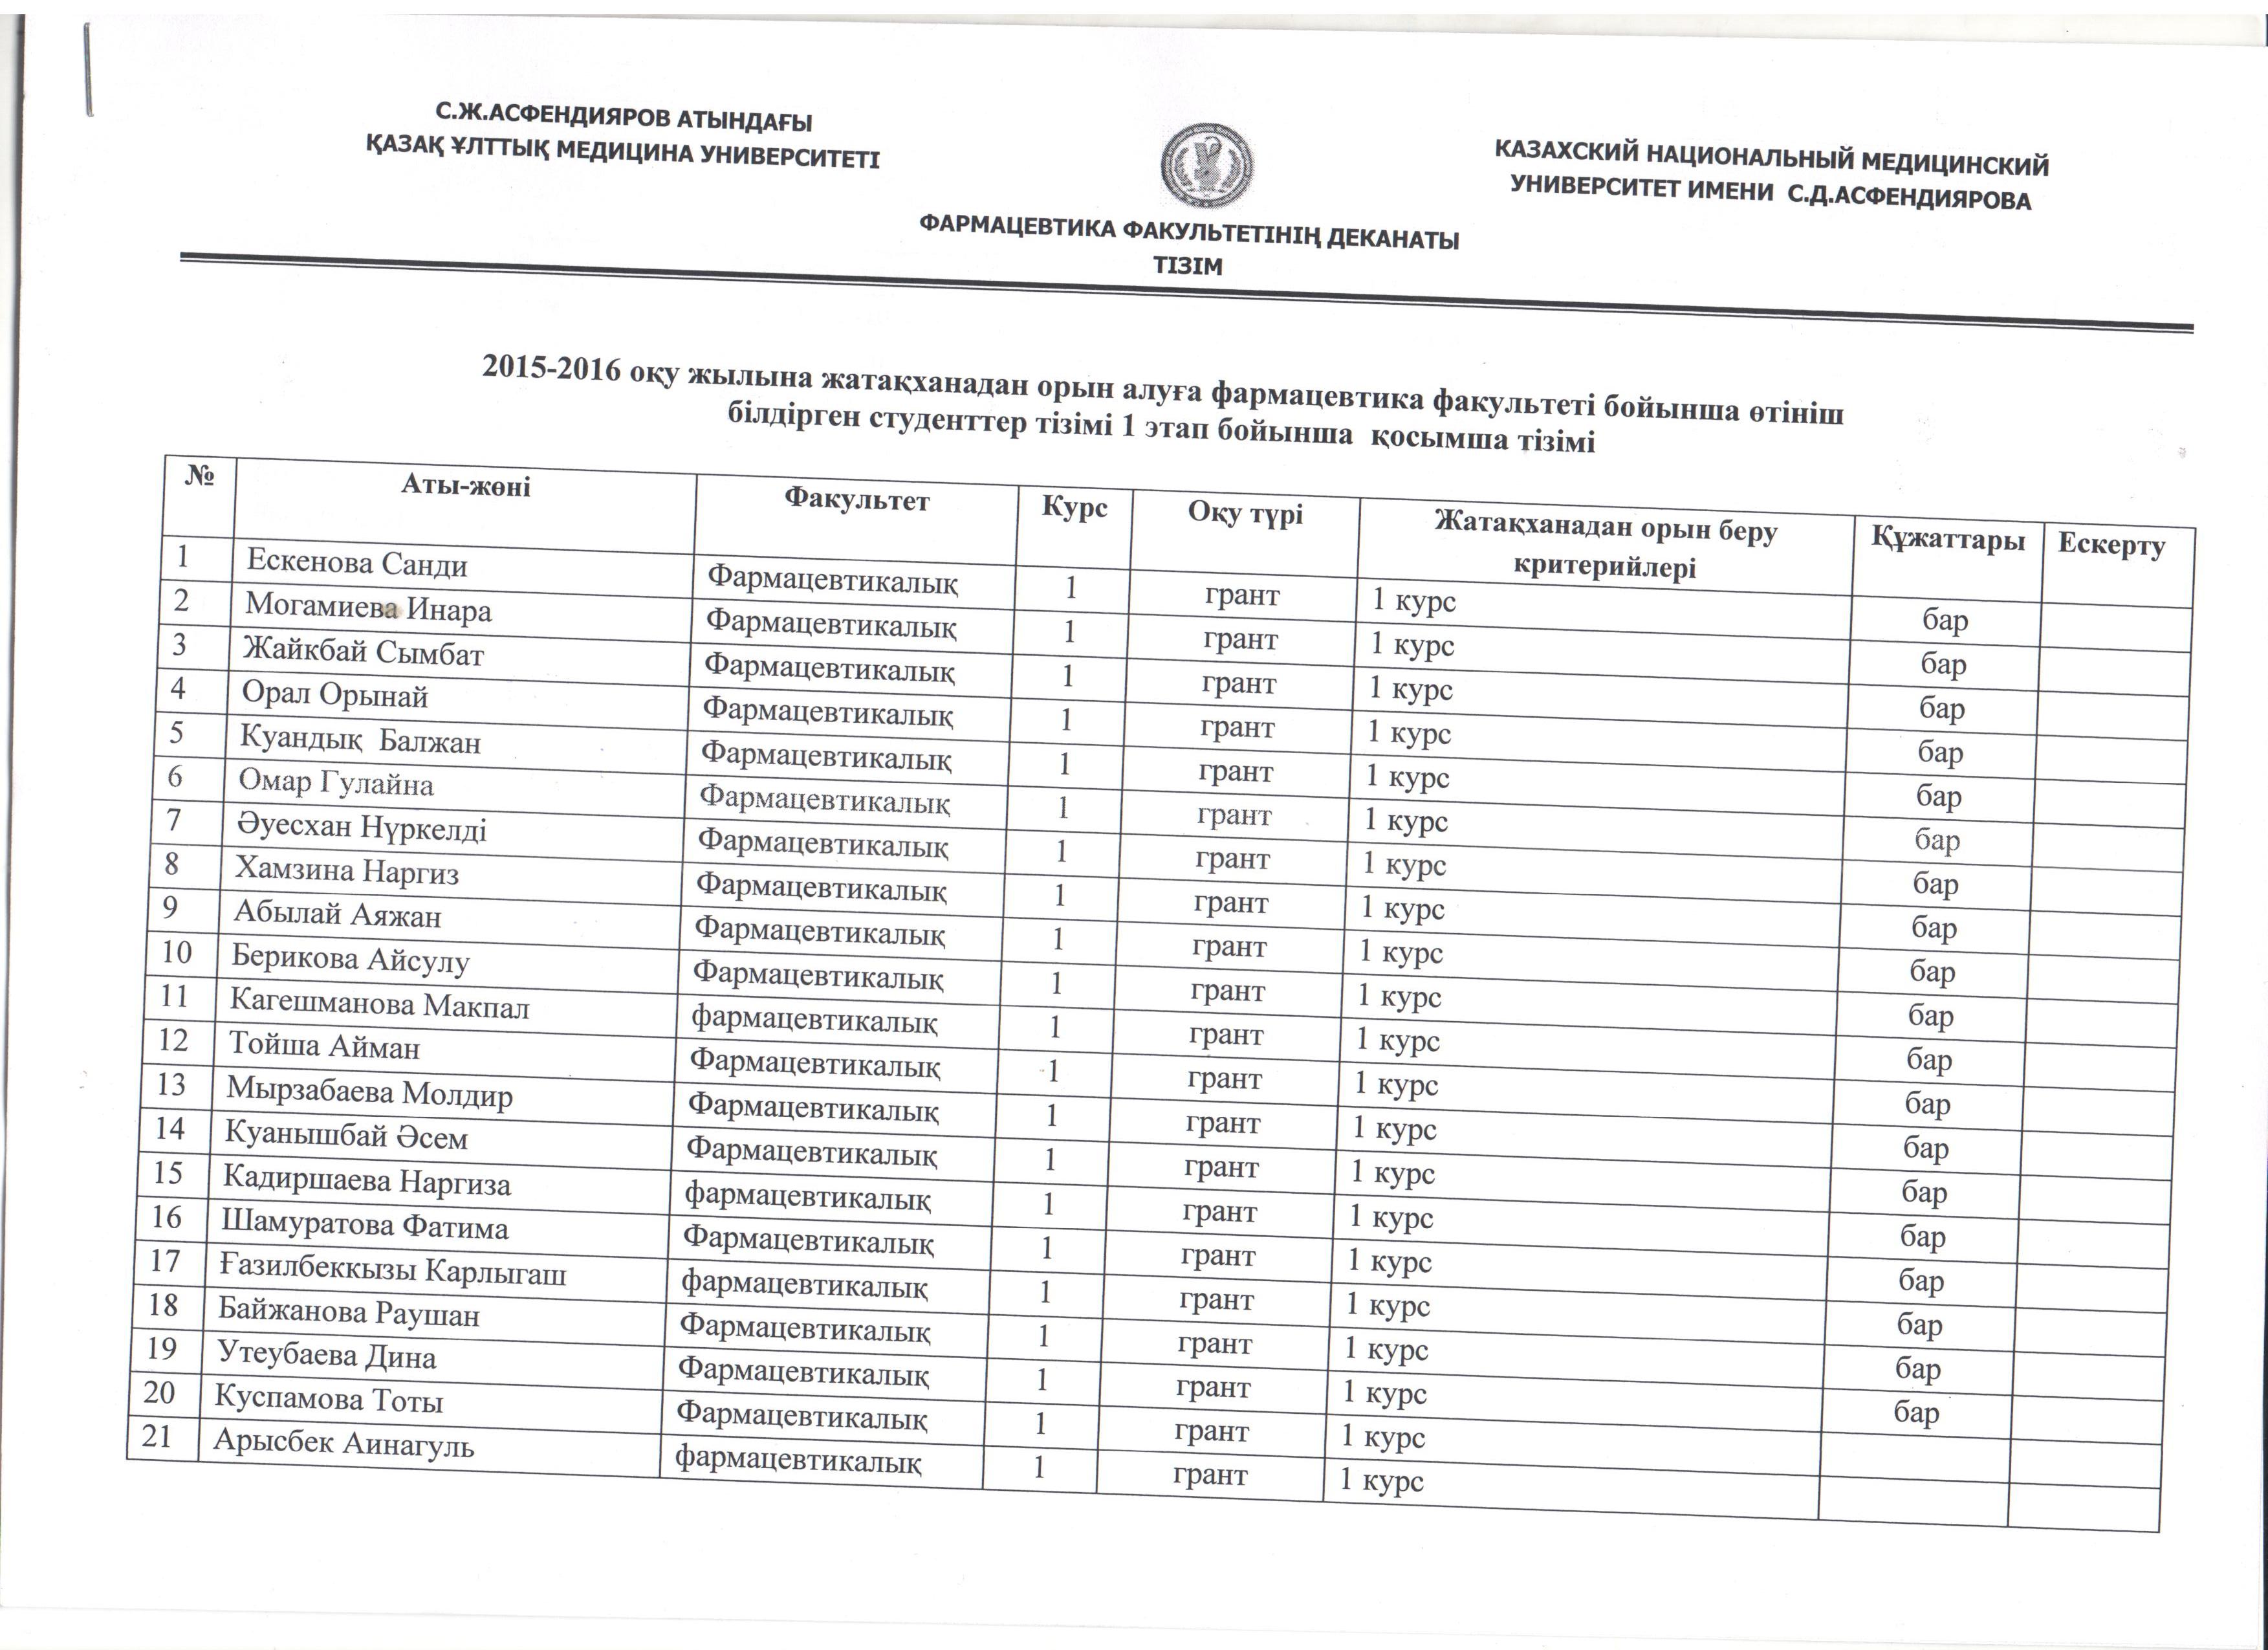 Список первокурсников получивших место в общежитиях КазНМУ на 2015-2016 учебный год. Факультета Фармацевтика01